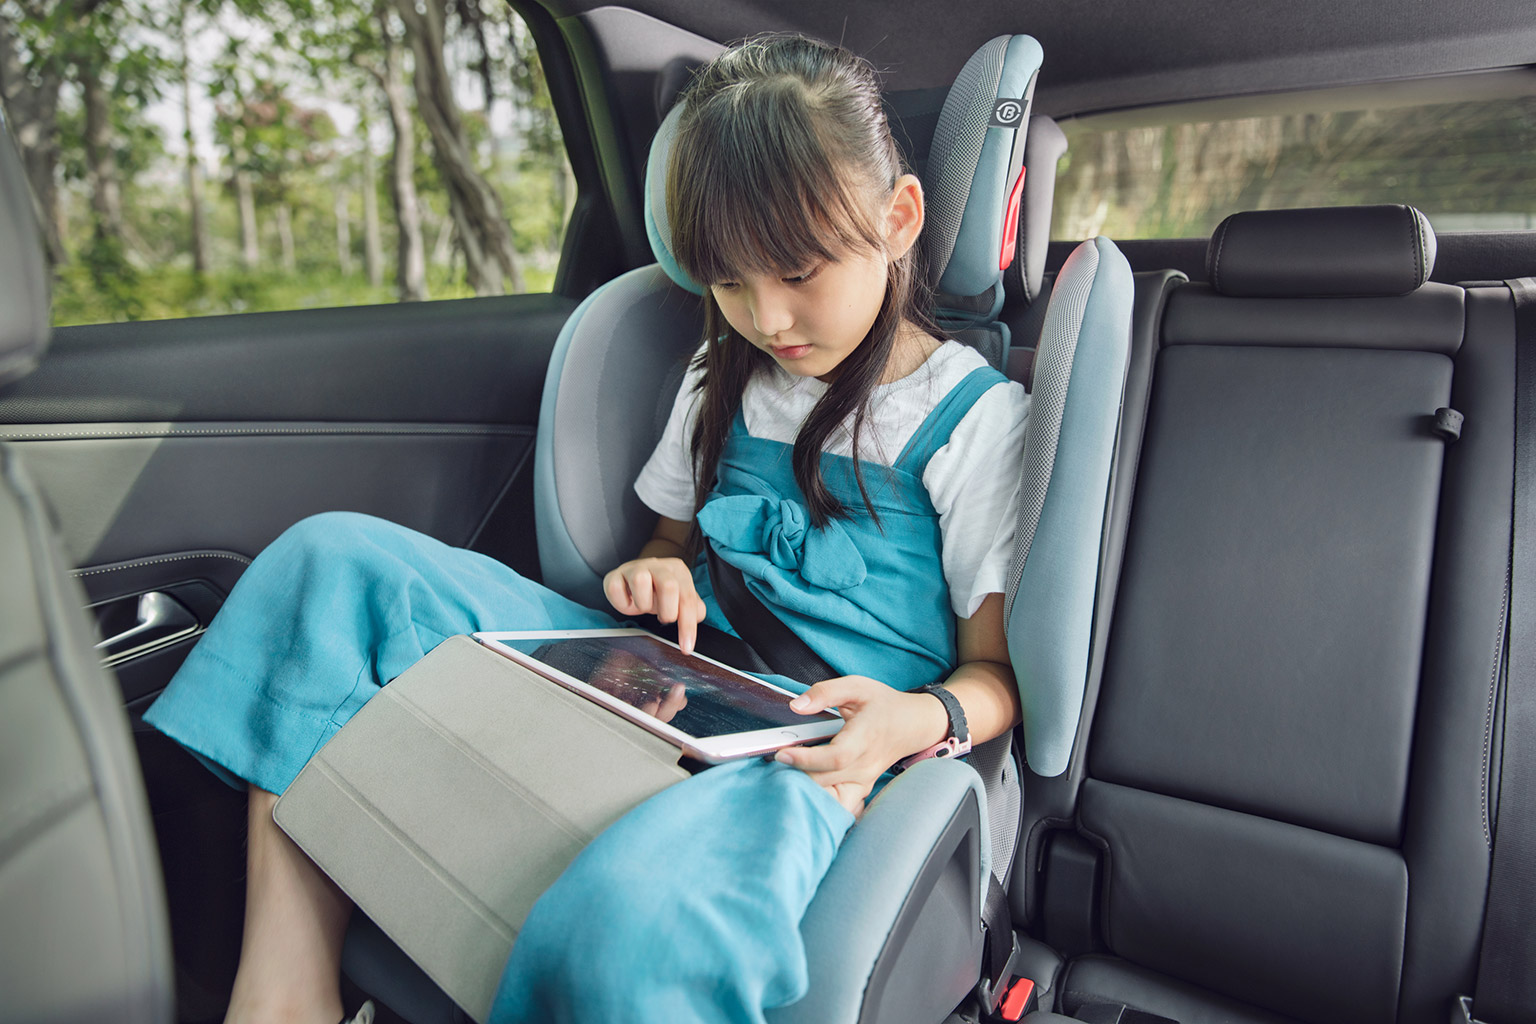 Child Car Seats Design: BIUCO Mars G.1-2-3